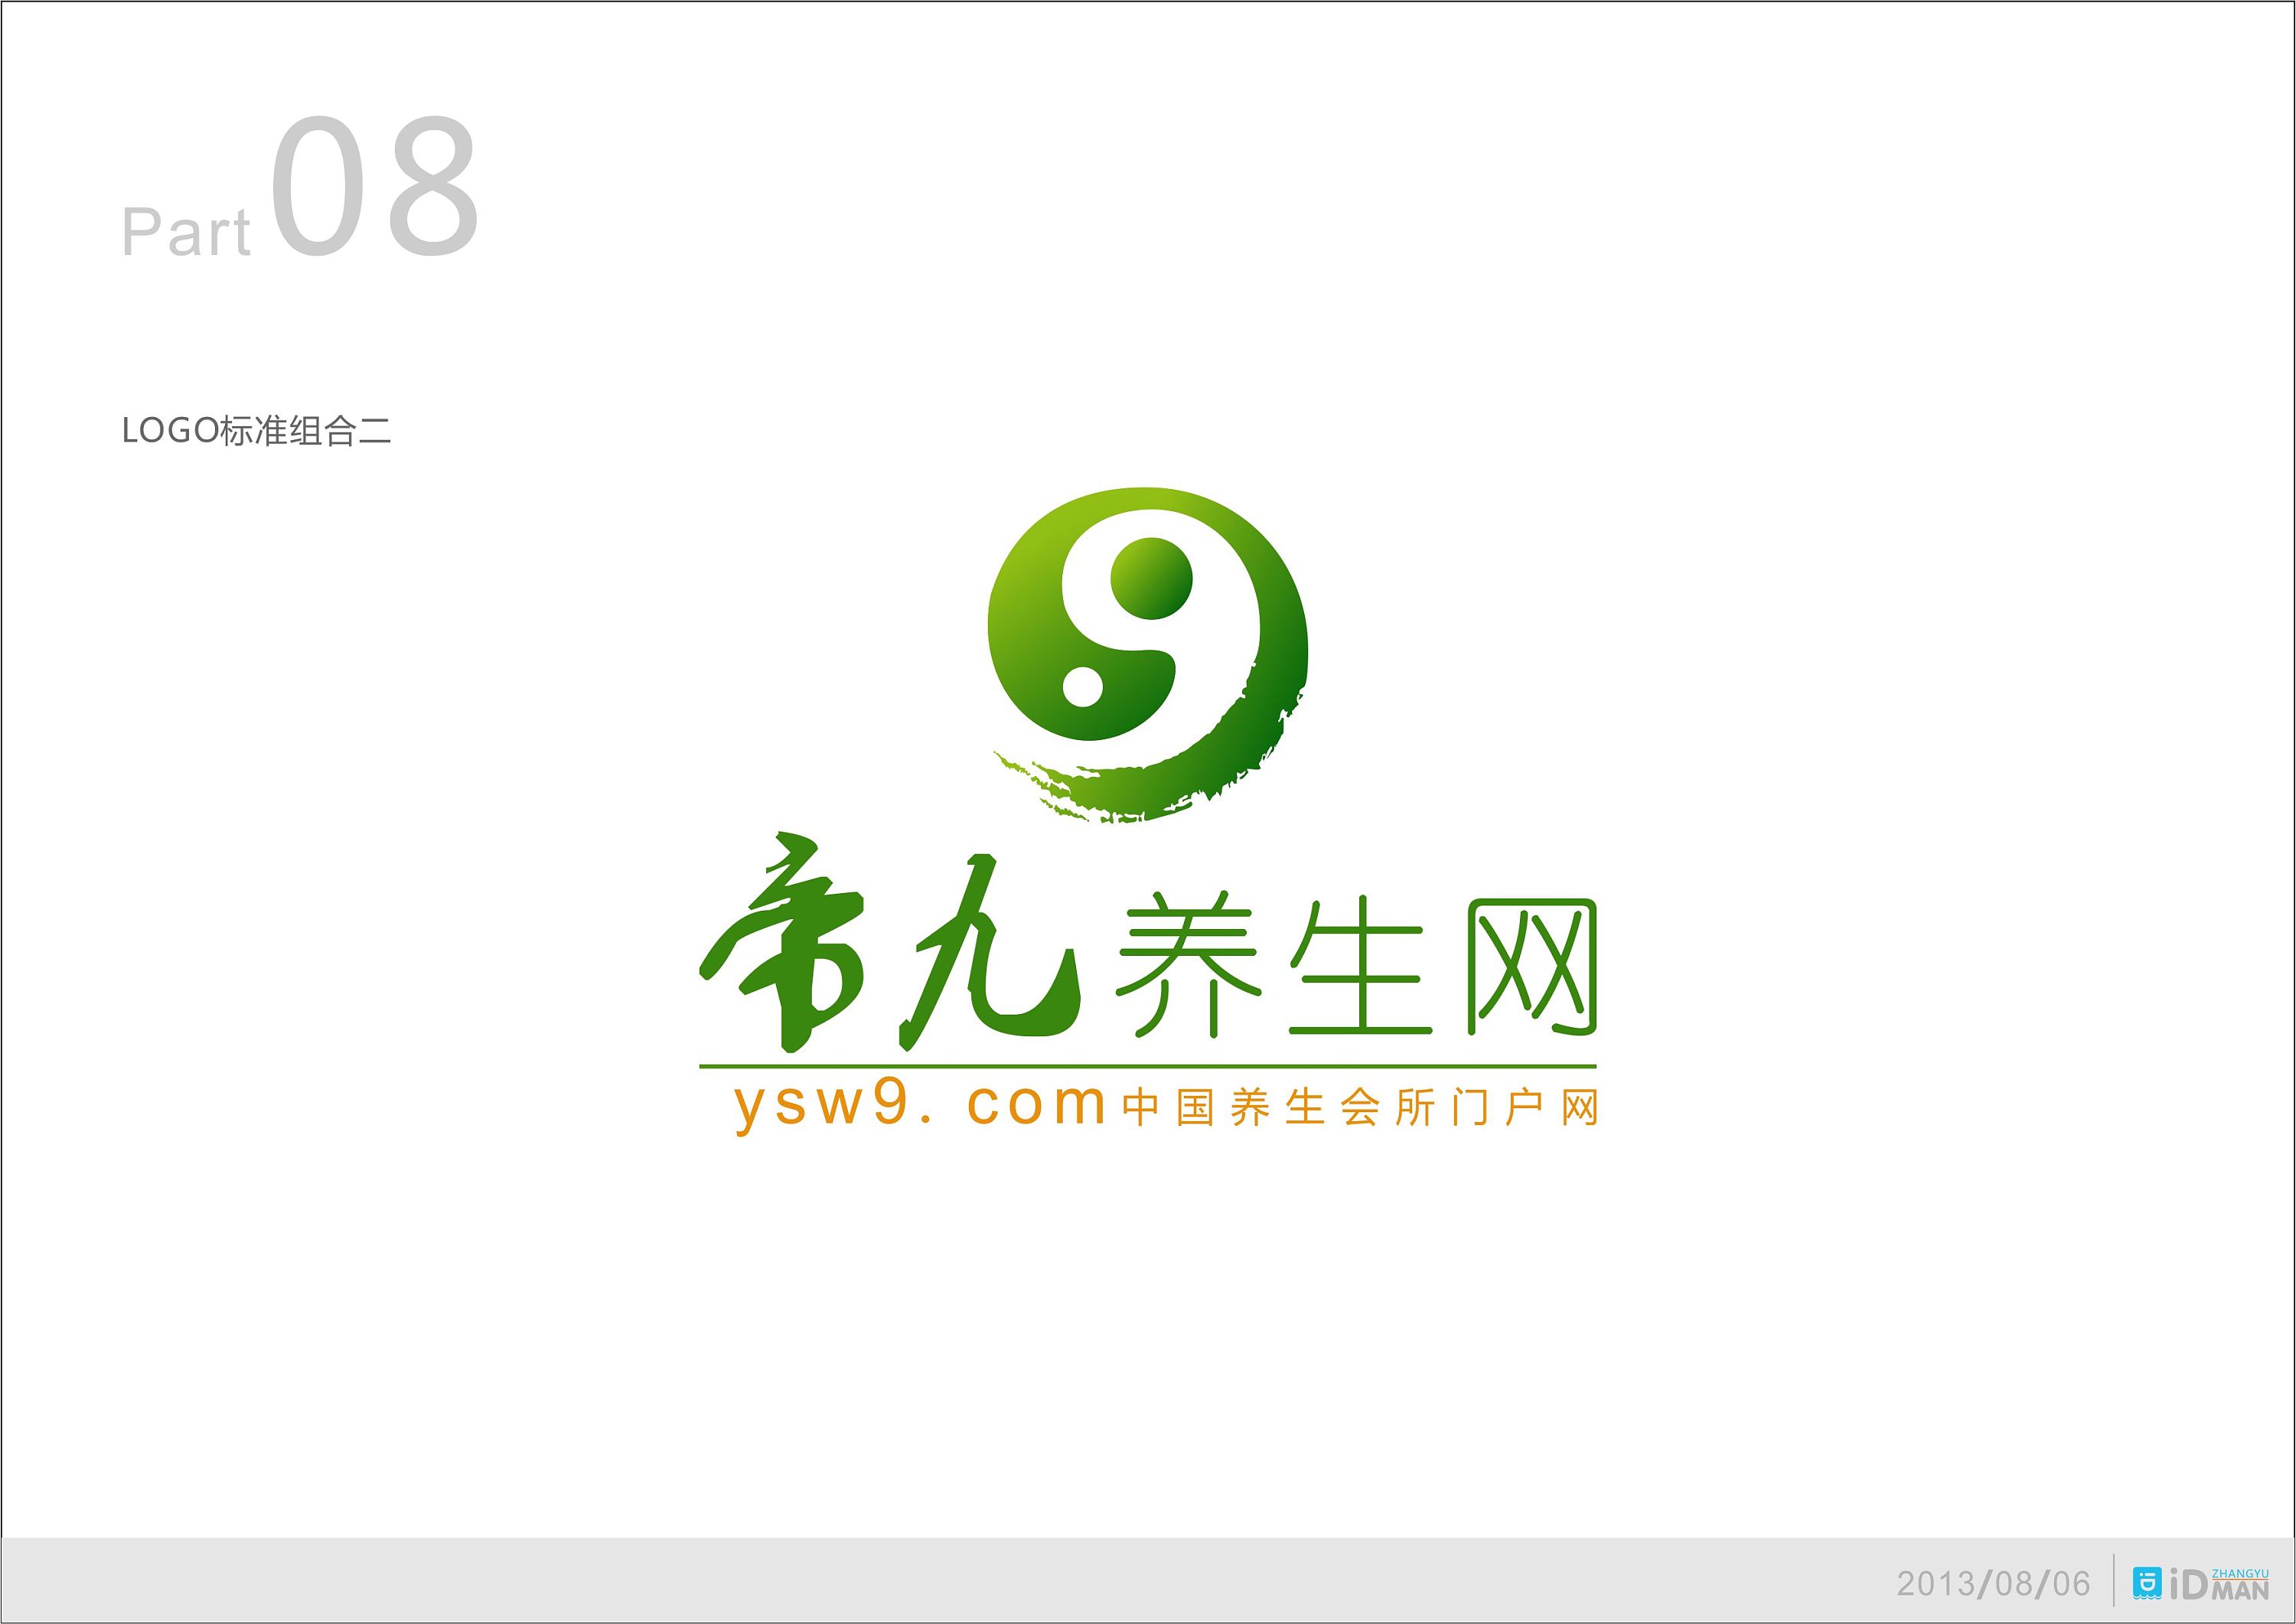 帝九养生网 logo设计与优化